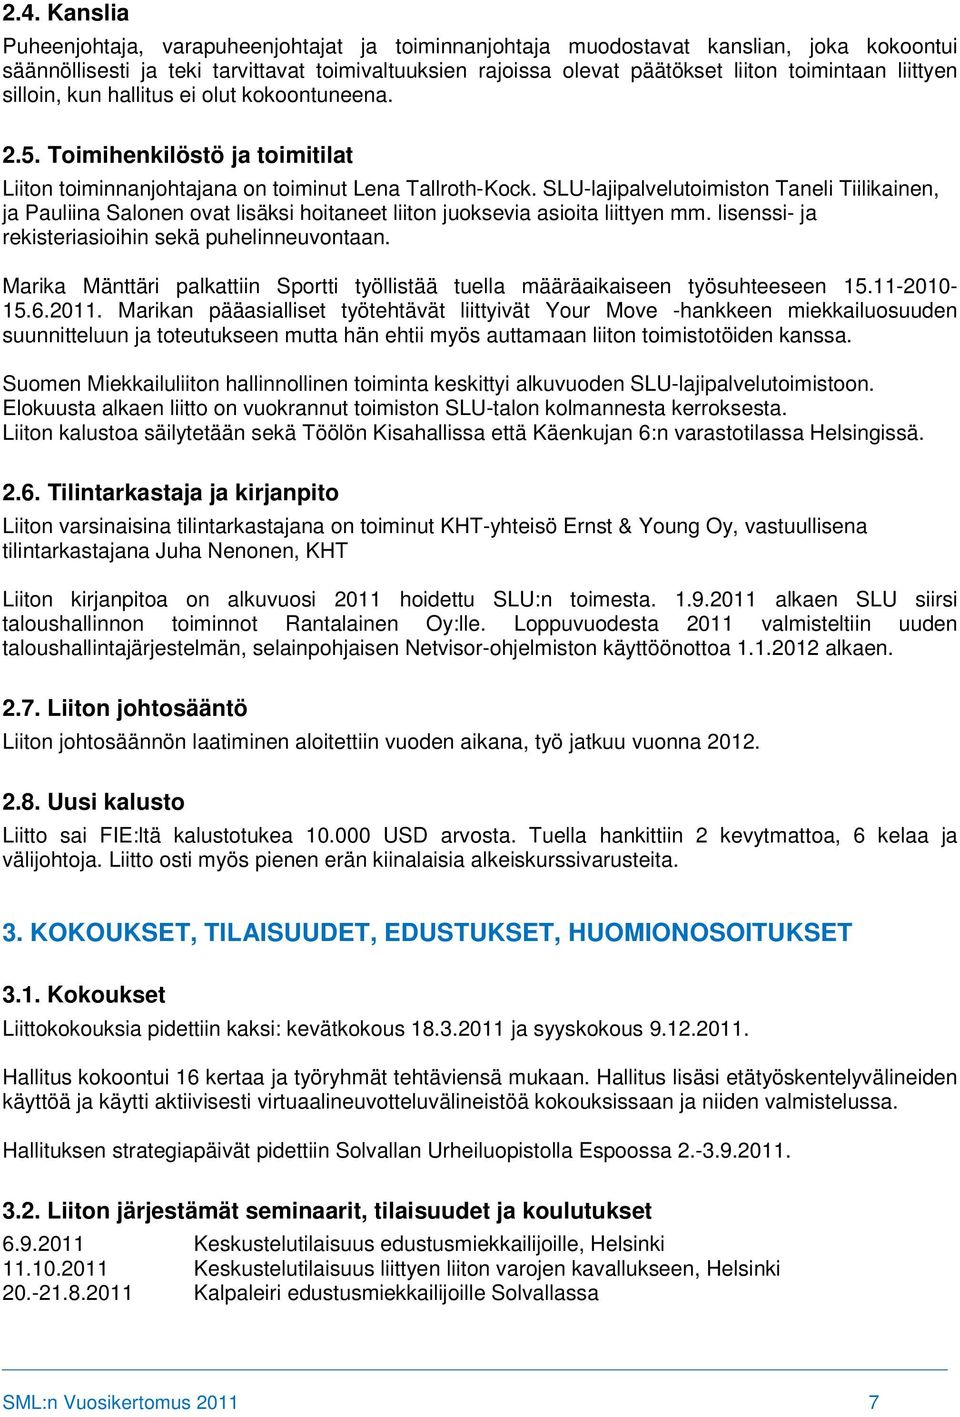 SLU-lajipalvelutoimiston Taneli Tiilikainen, ja Pauliina Salonen ovat lisäksi hoitaneet liiton juoksevia asioita liittyen mm. lisenssi- ja rekisteriasioihin sekä puhelinneuvontaan.